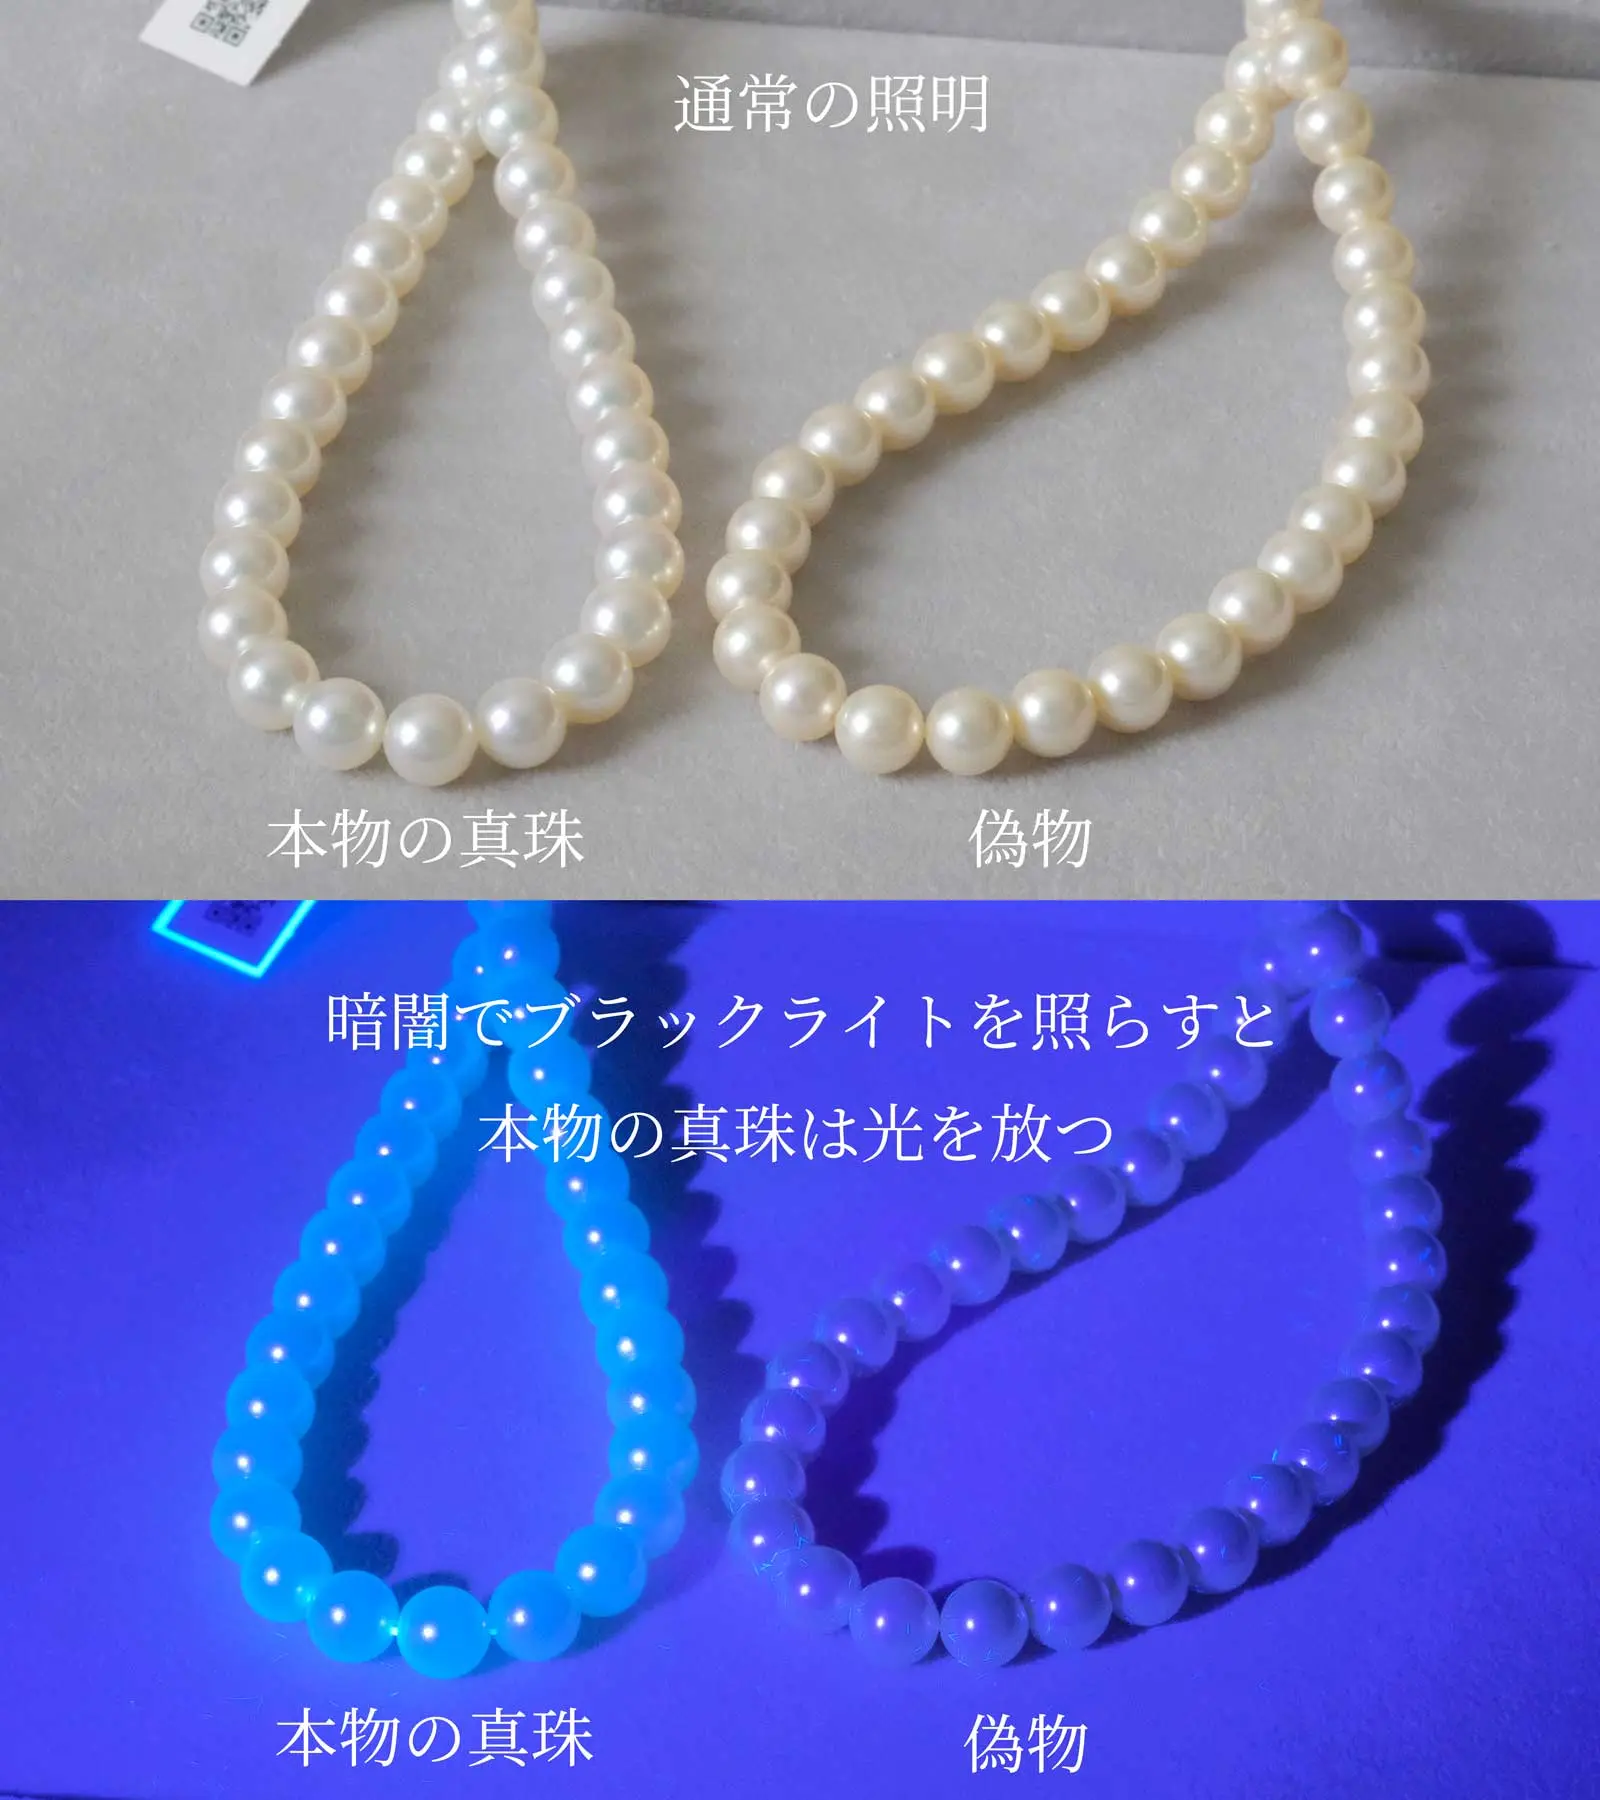 本物の真珠と偽物の真珠の蛍光性の違い